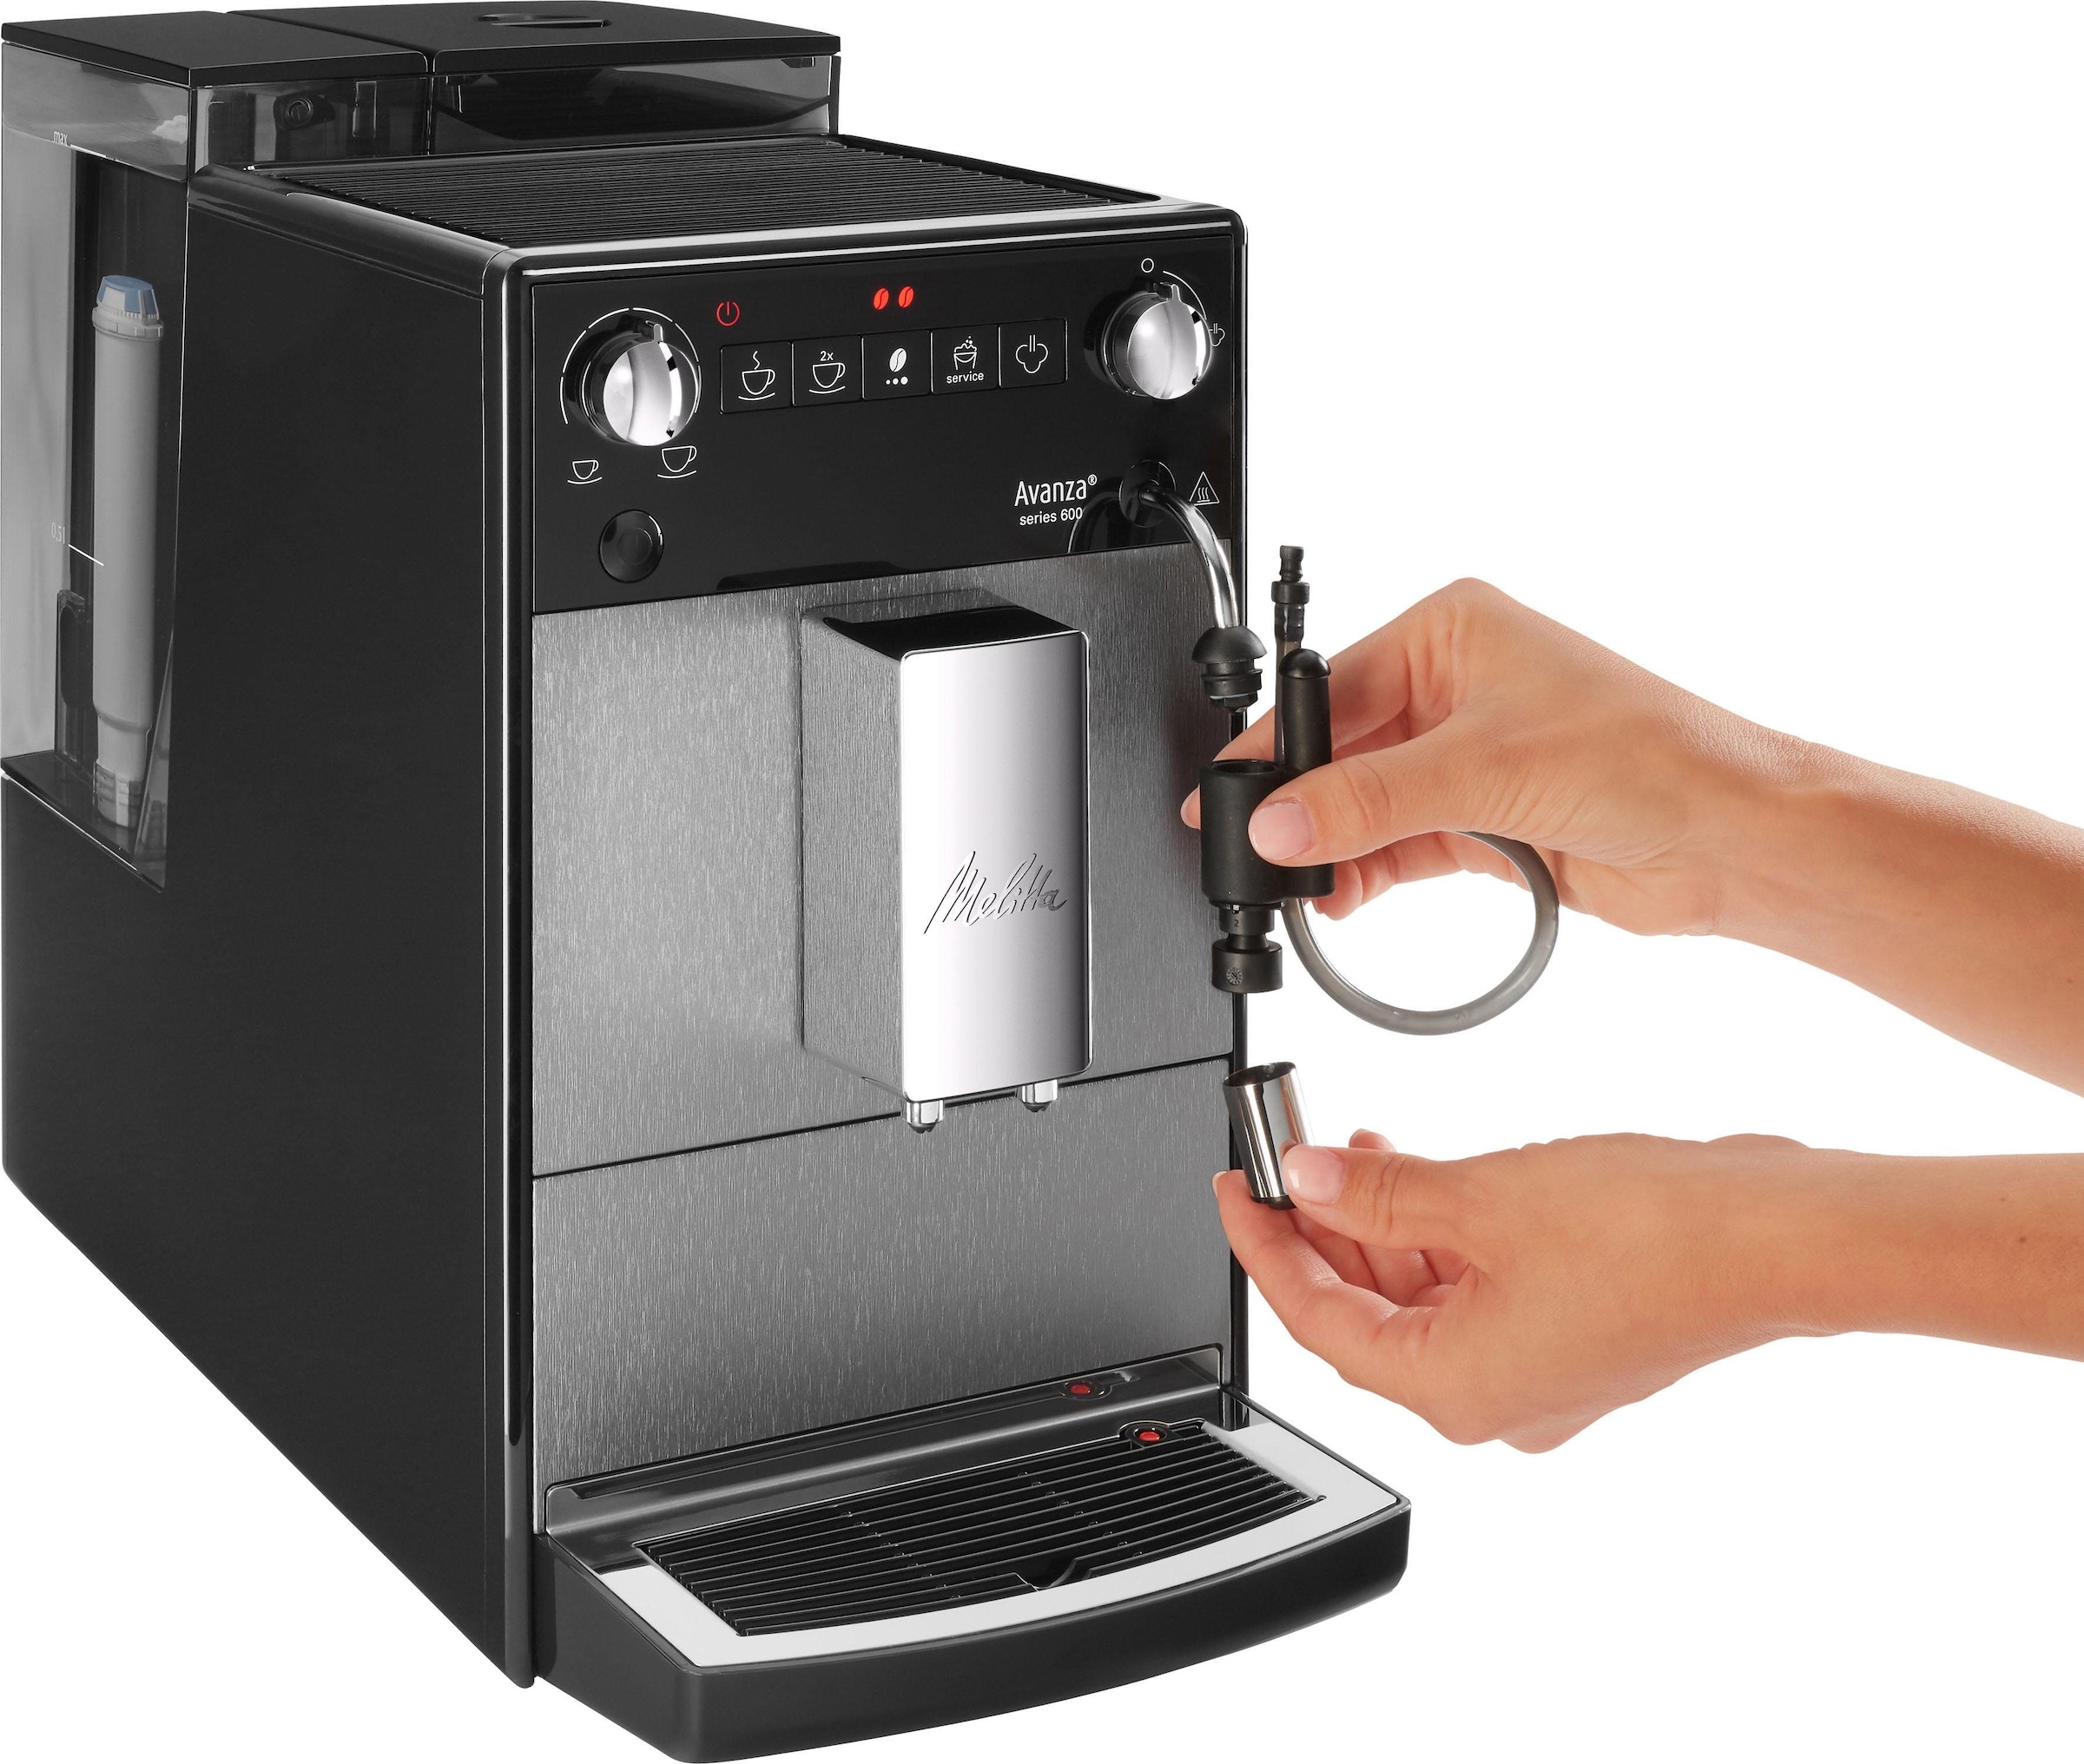 Melitta Kaffeevollautomat »Avanza® F270-100 Mystic Titan«, Kompakt, aber XL Wassertank & XL Bohnenbehälter, Milchschaum-System